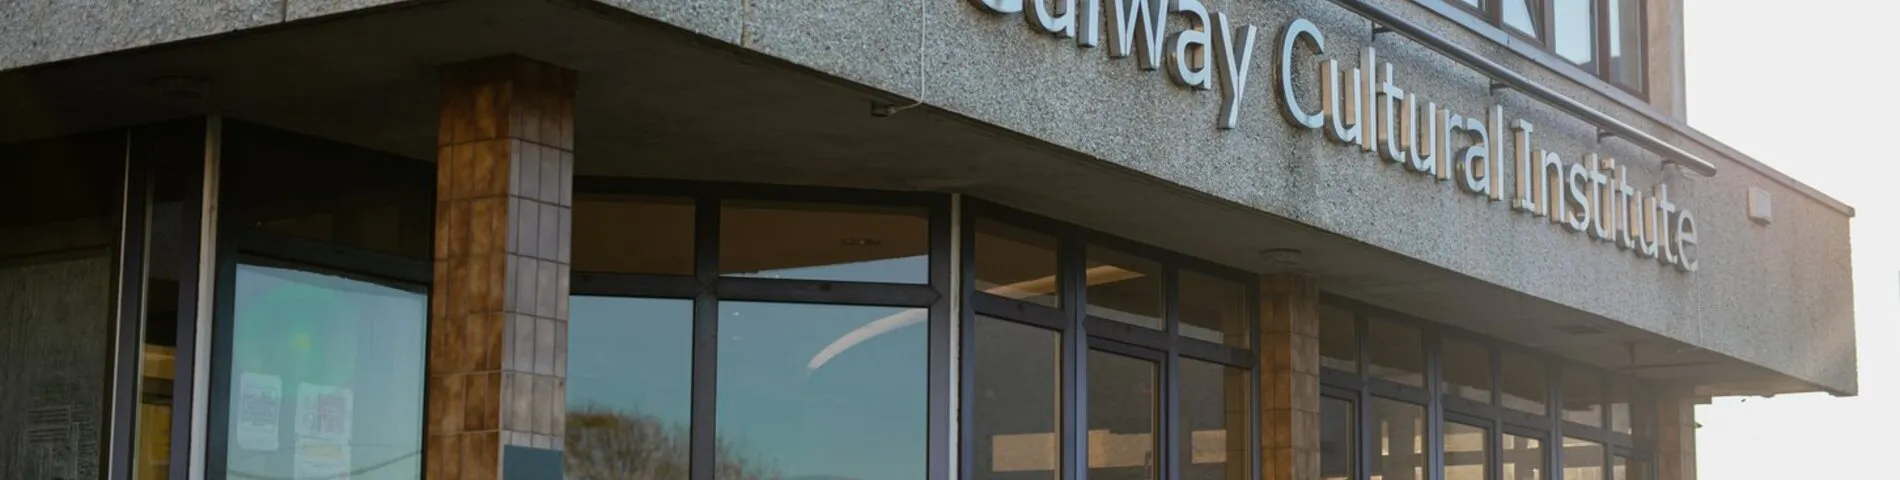 Galway Cultural Institute immagine 1